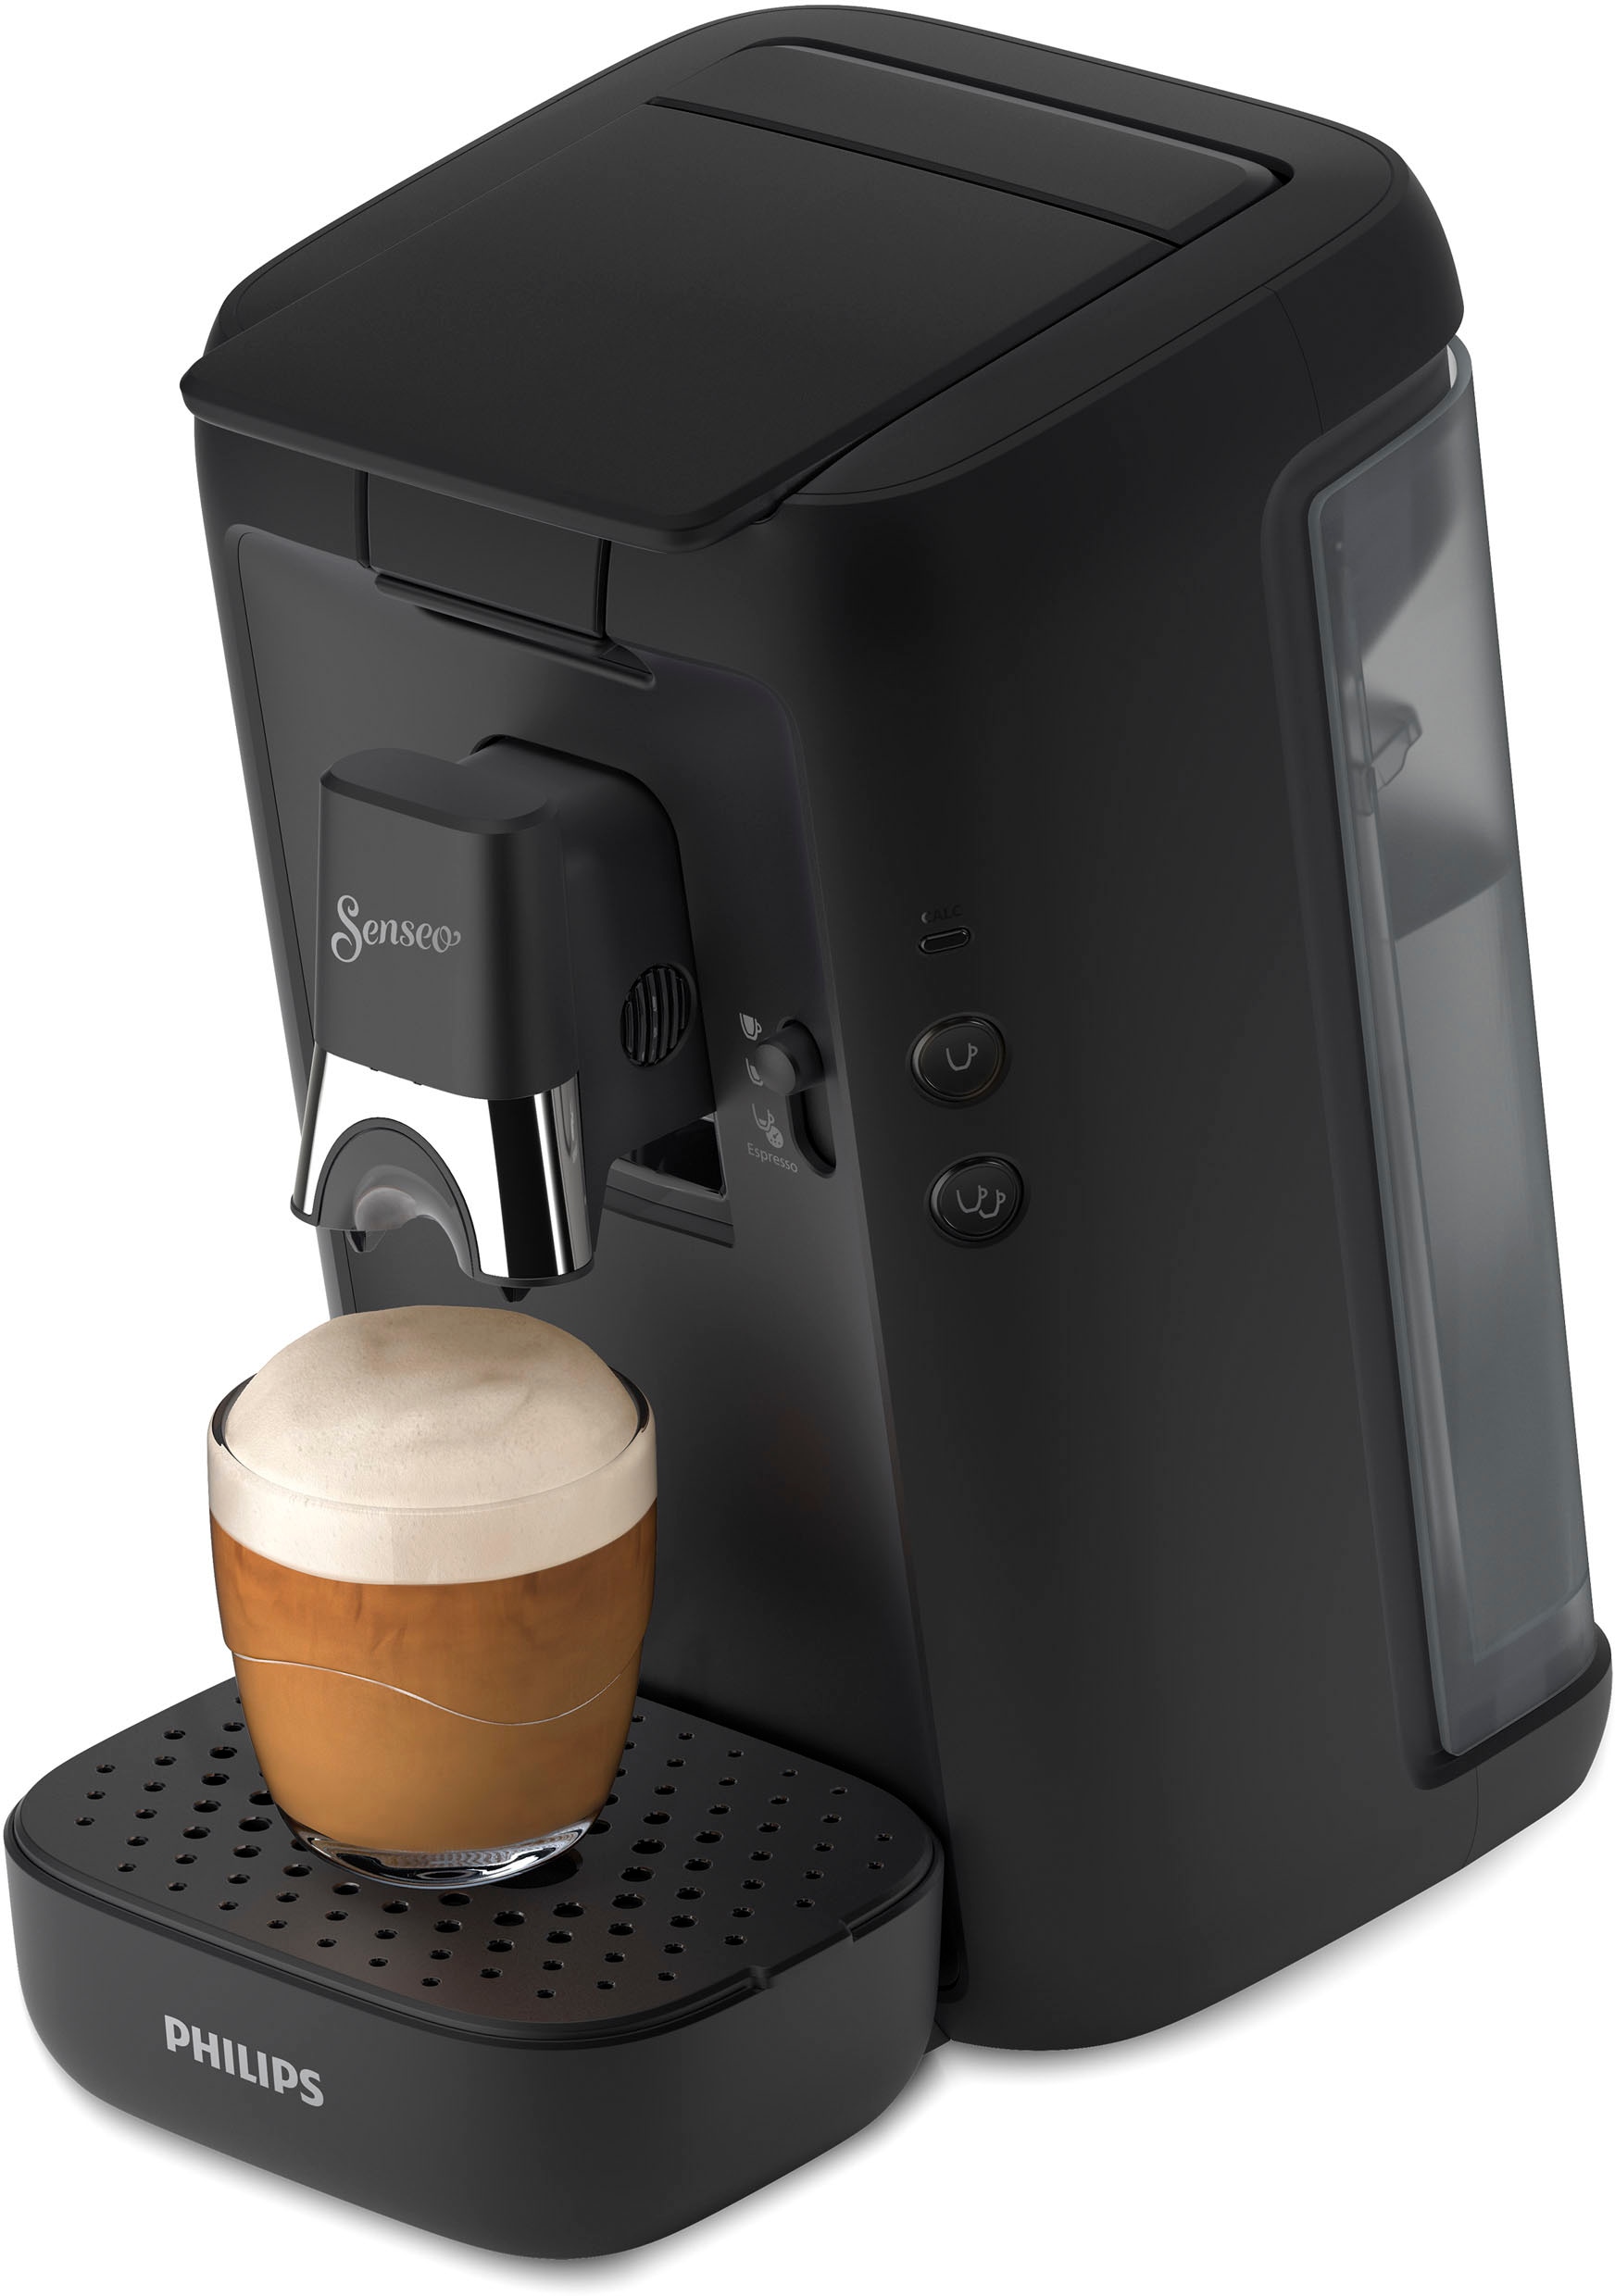 € XXL UVP 14,- Jahren 3 Wert Senseo Kaffeepadmaschine von Garantie mit Gratis-Zugaben inkl. Philips im CSA260/60«, »Maestro